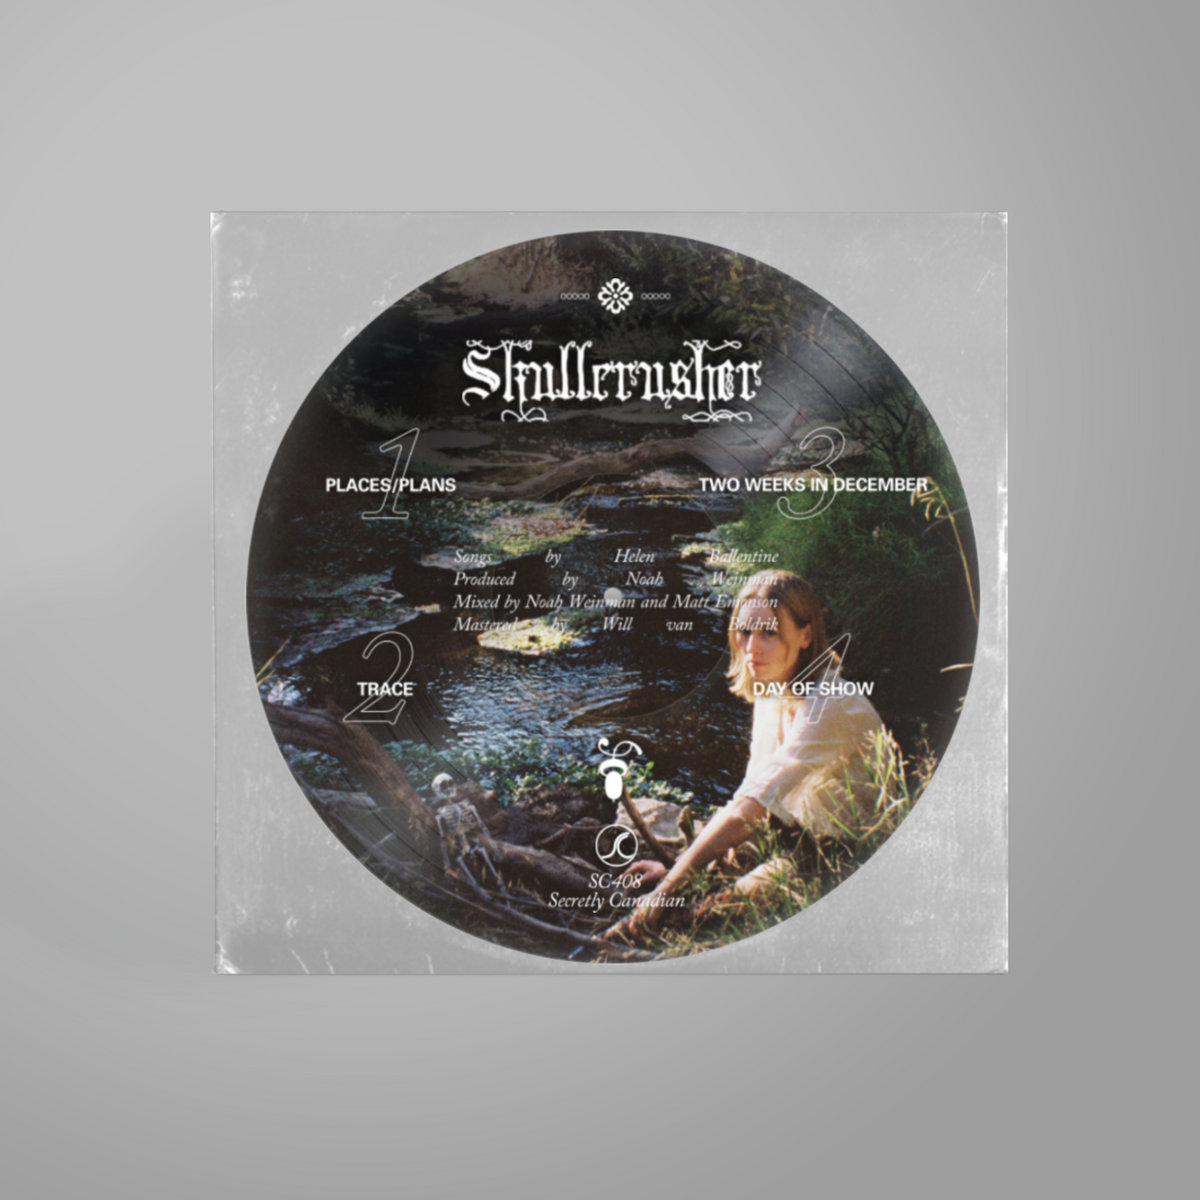 Skullcrusher "Skullcrusher" LP